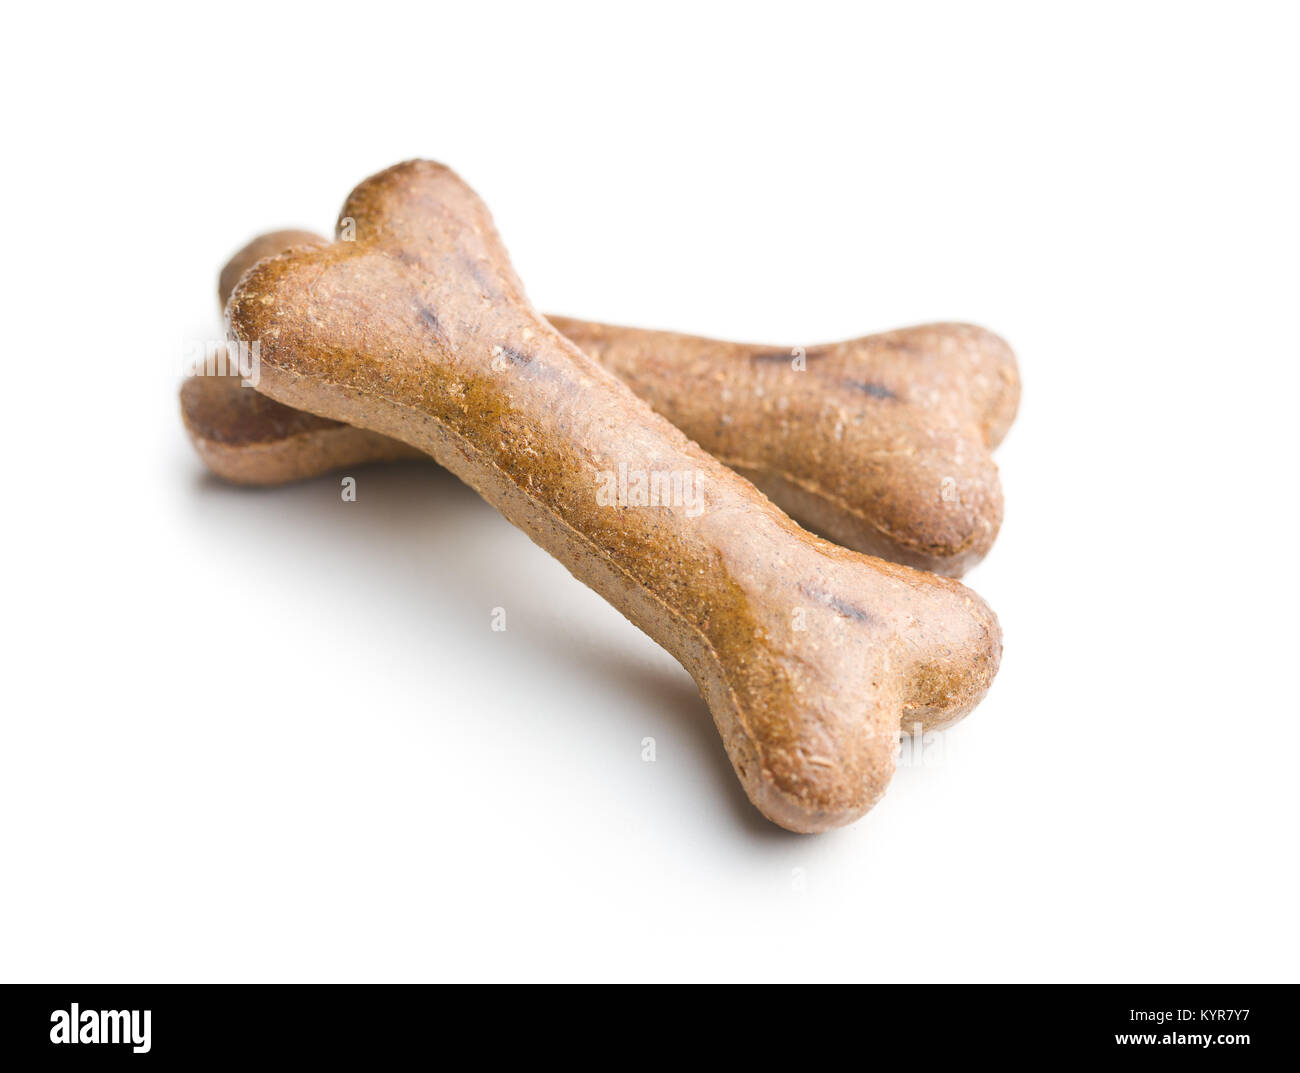 Dog food. Bone snack isolated on white background. Stock Photo